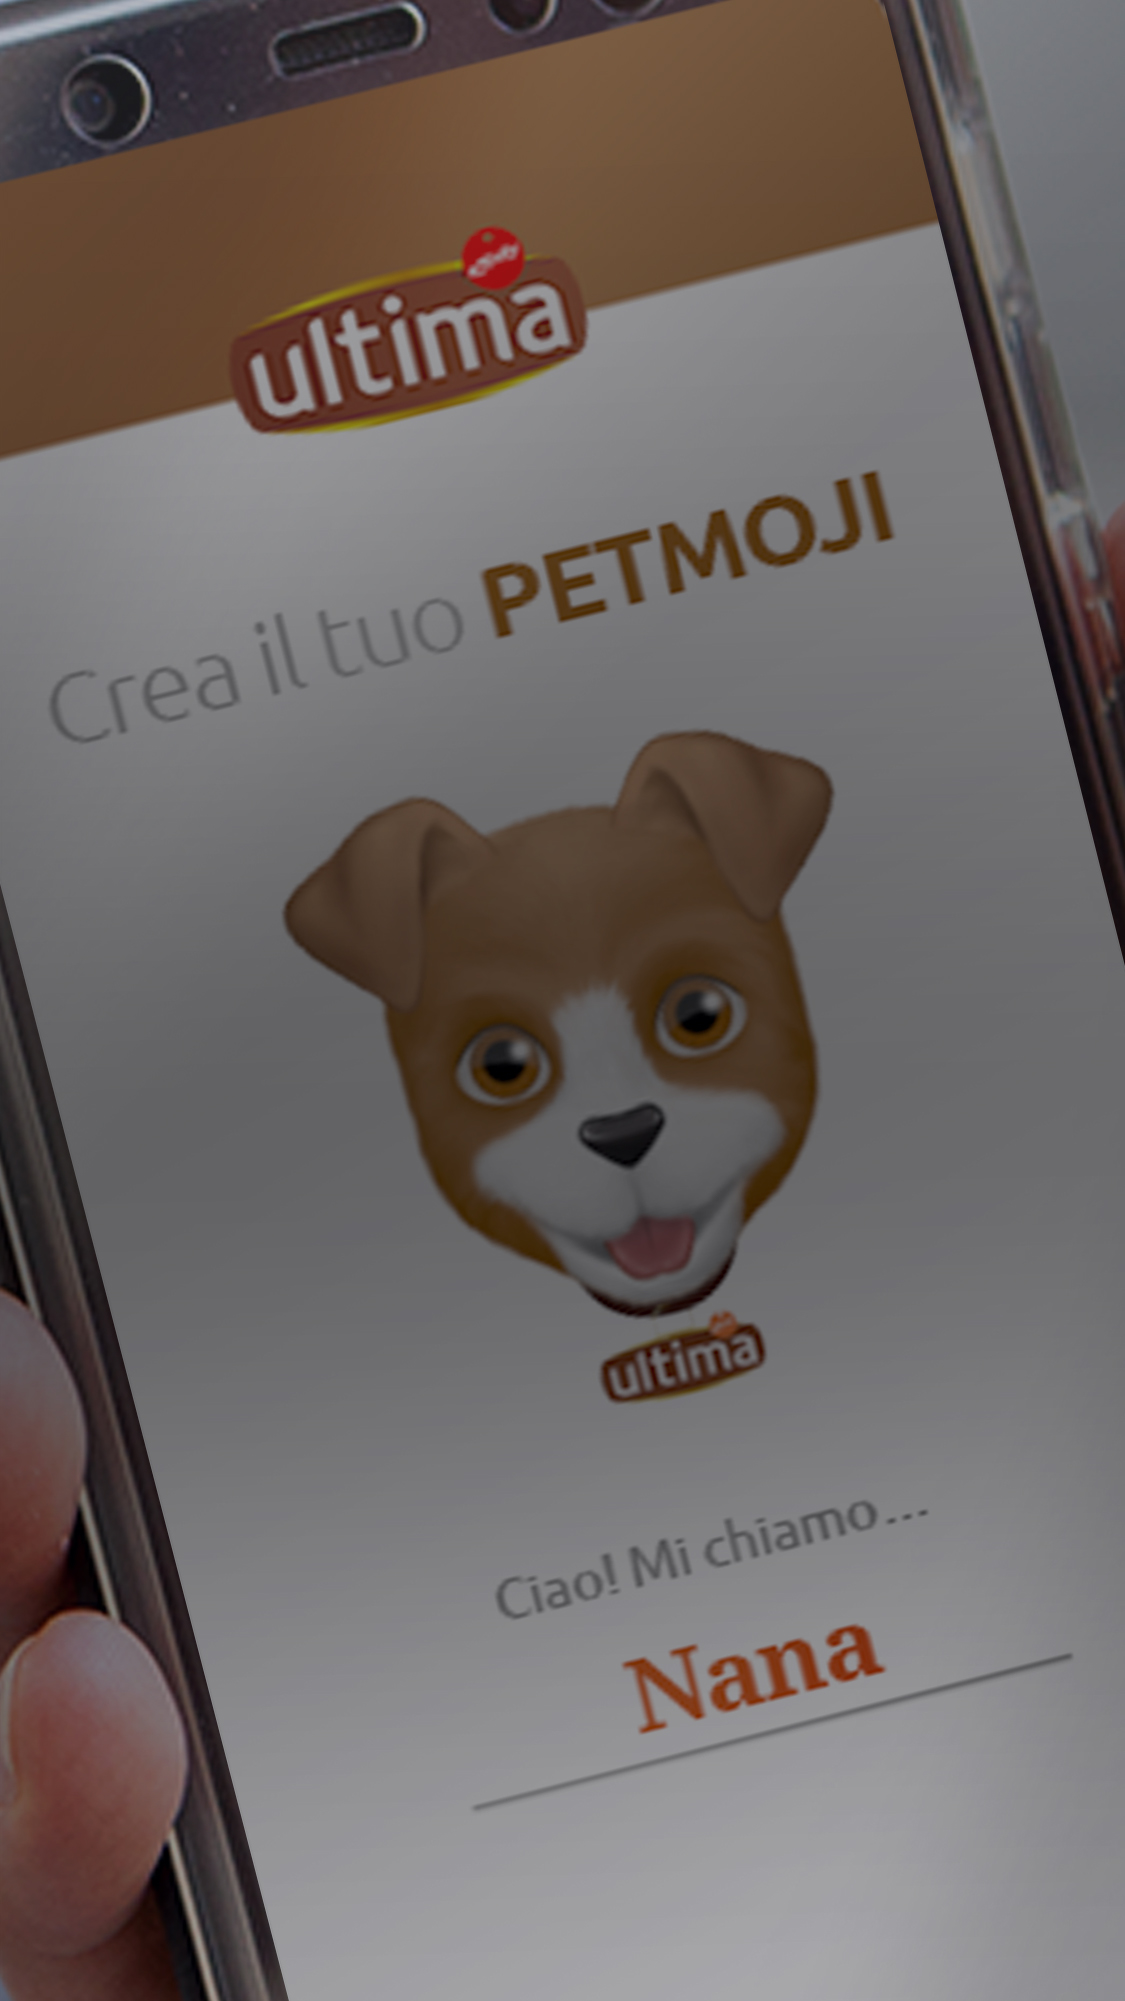 Benvenuti al nostro configuratore di <span>Petmoji</span>! Scegli tra cane o gatto, personalizza le sue carattersitiche e condividilo in whatsapp!